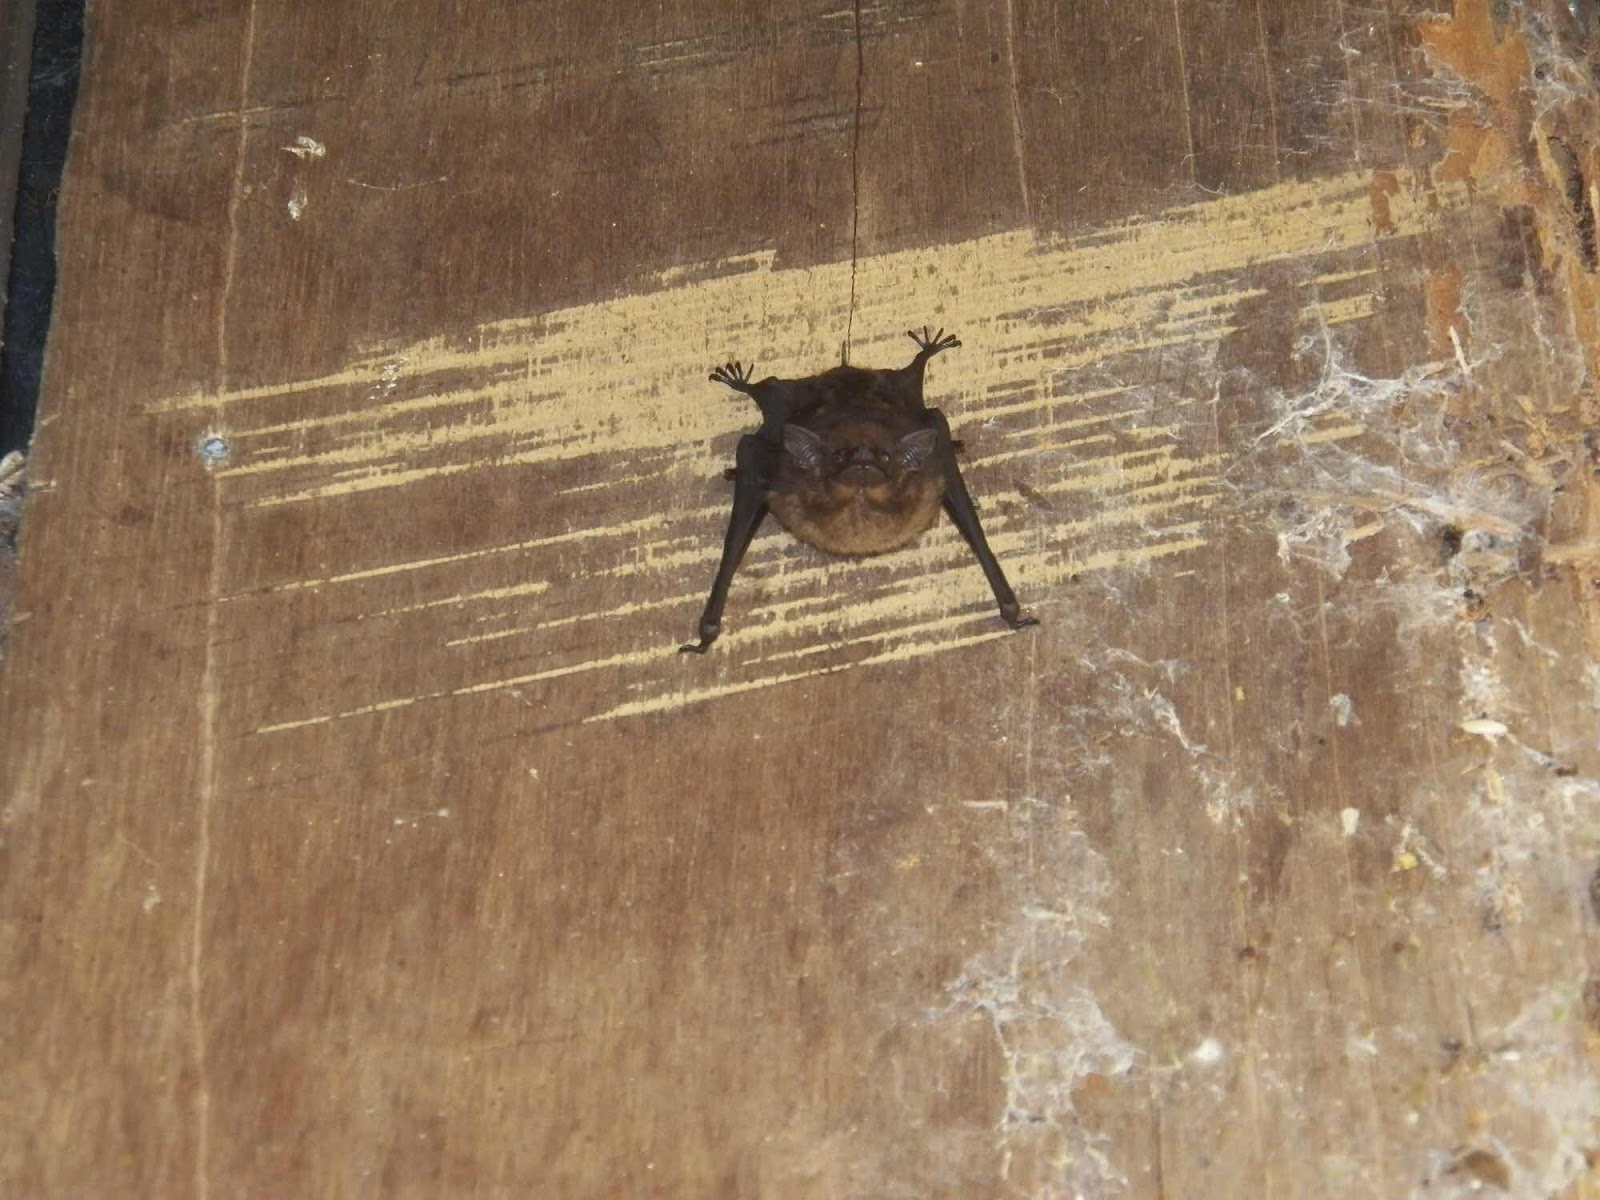 Lon-Nosed Bat, Nicuesa, Costa Rica